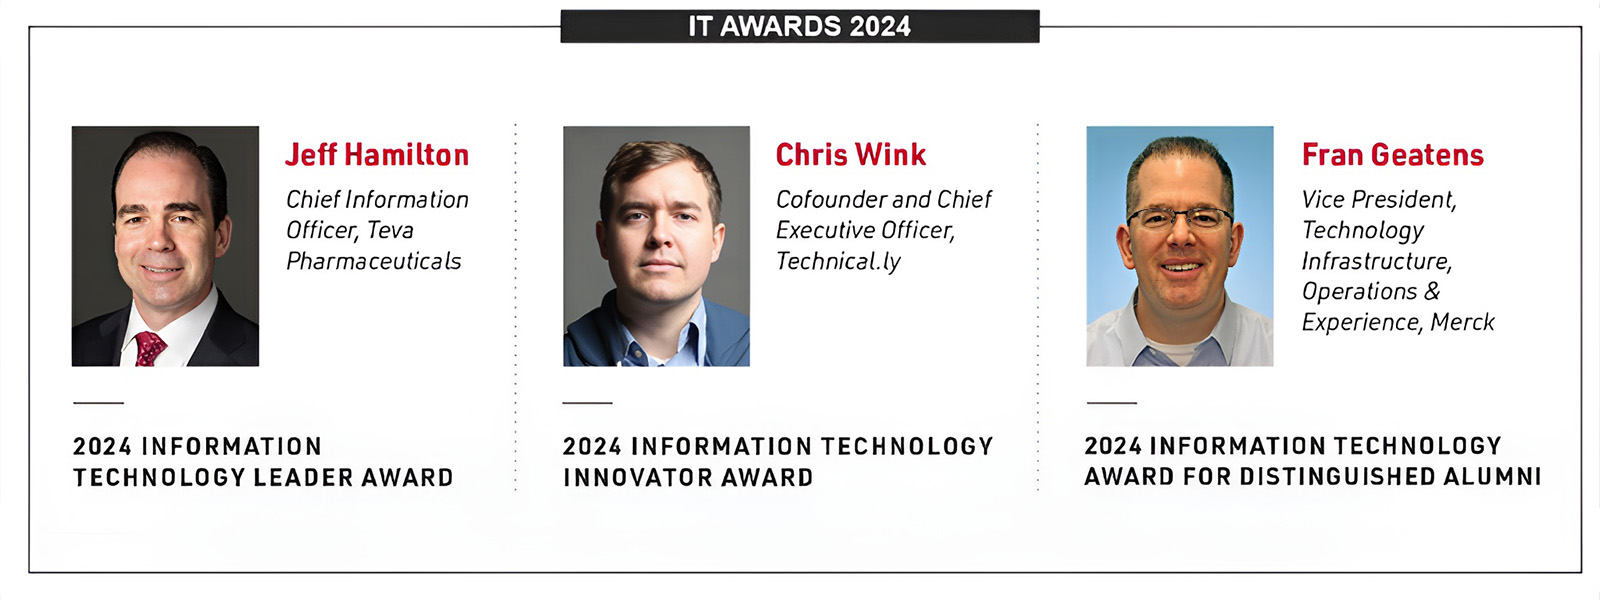 IT Awards Slide 2024